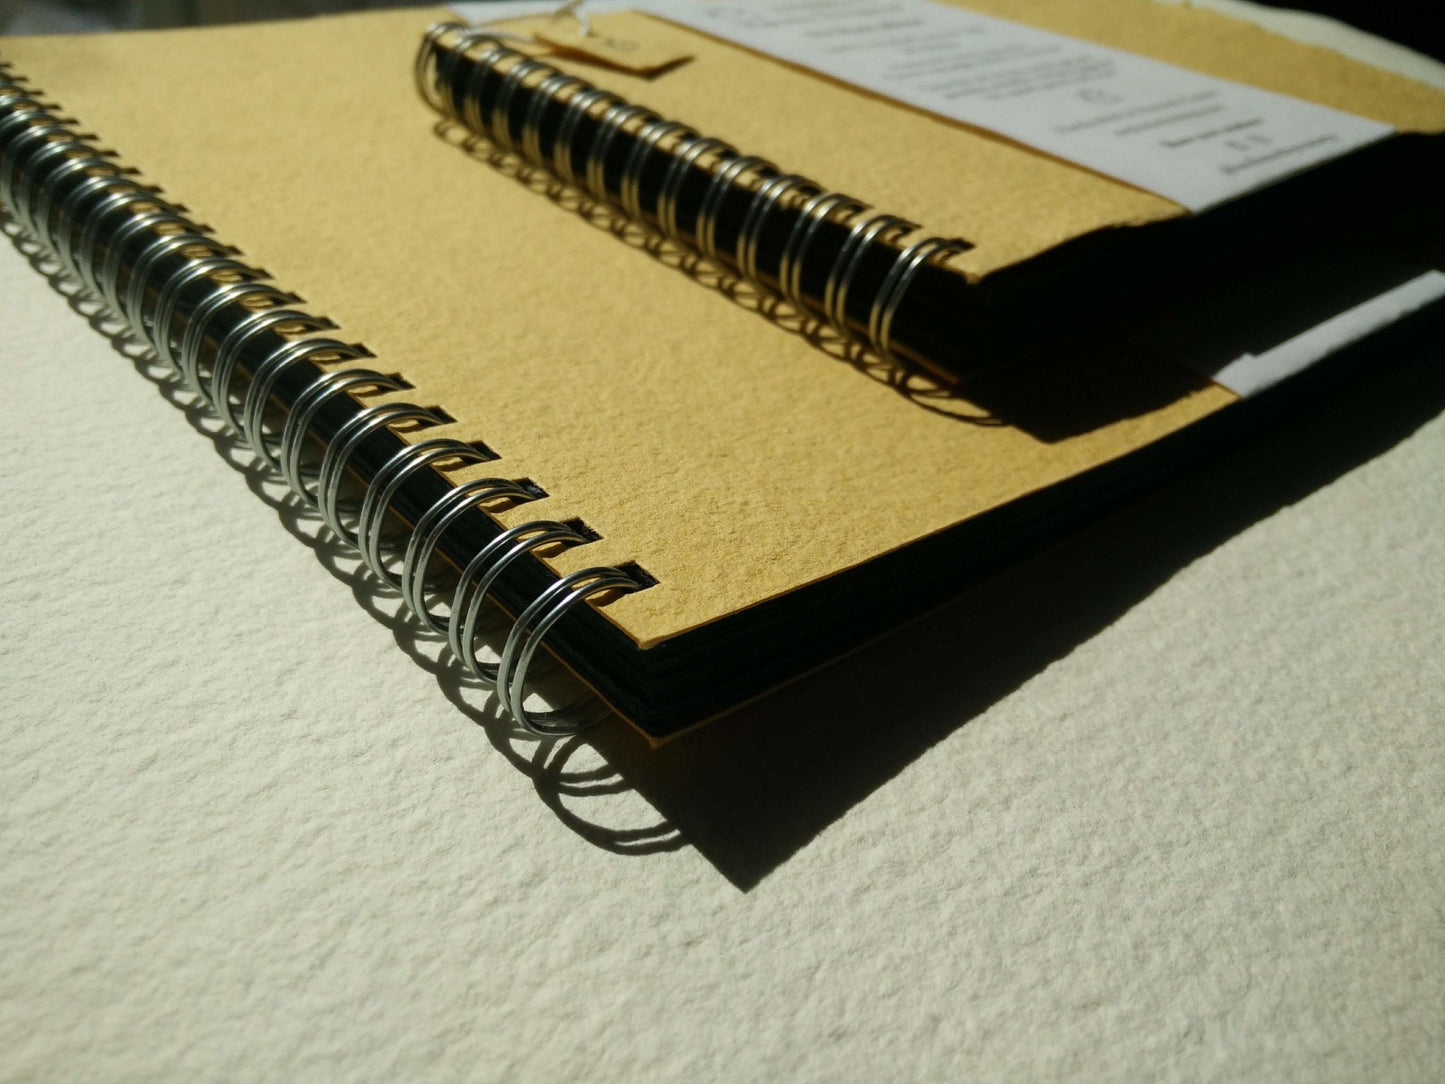 Large | The Black Paper Sketchbook